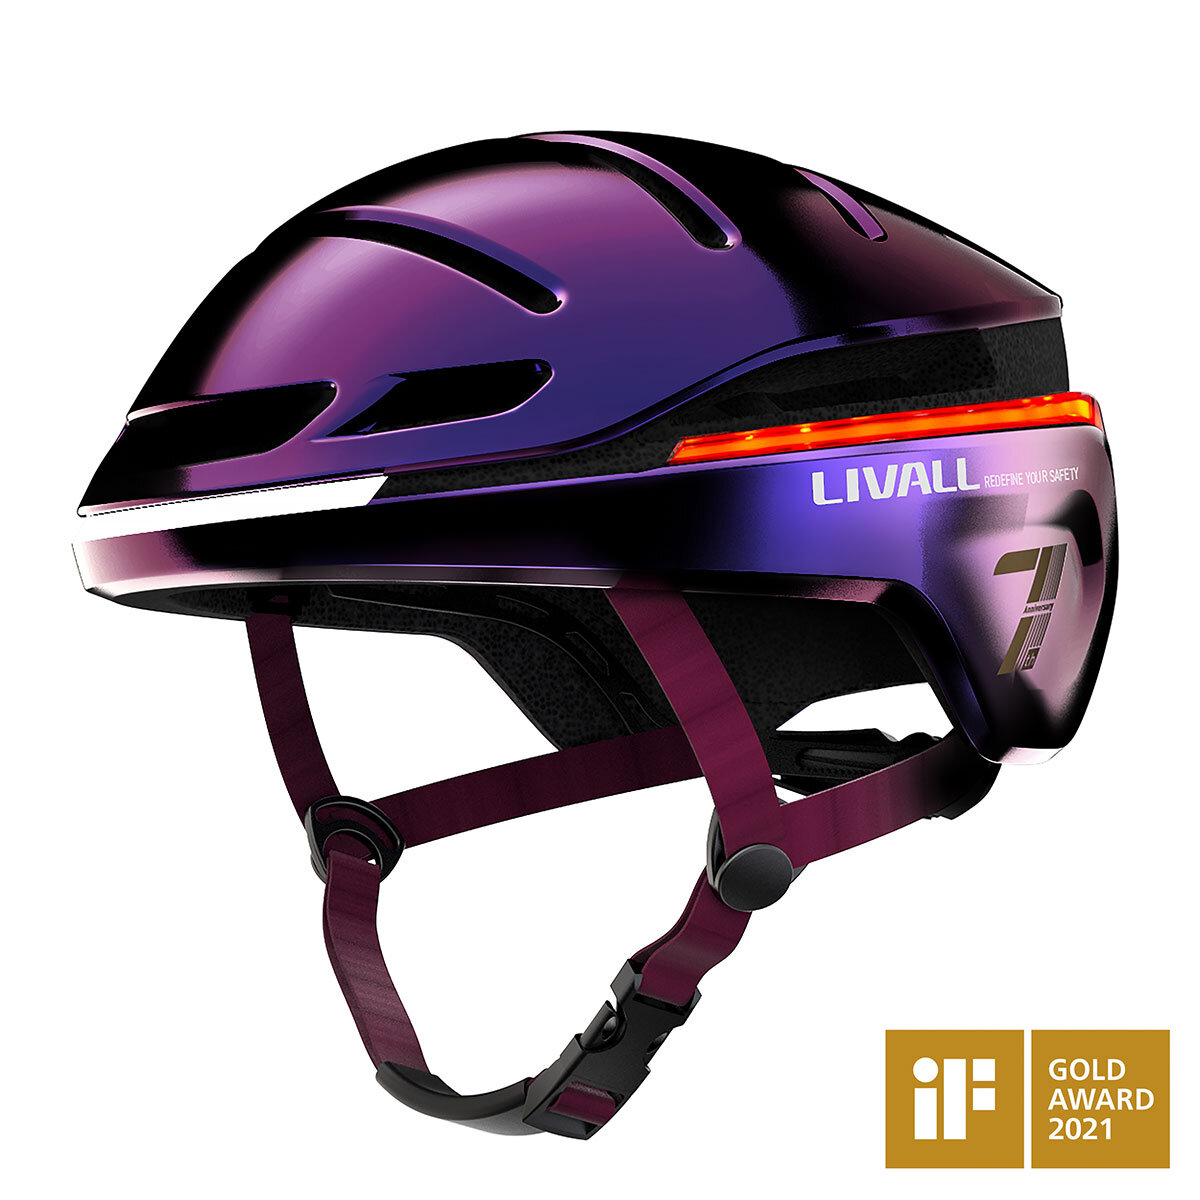 Livall helmet in Ultraviolet